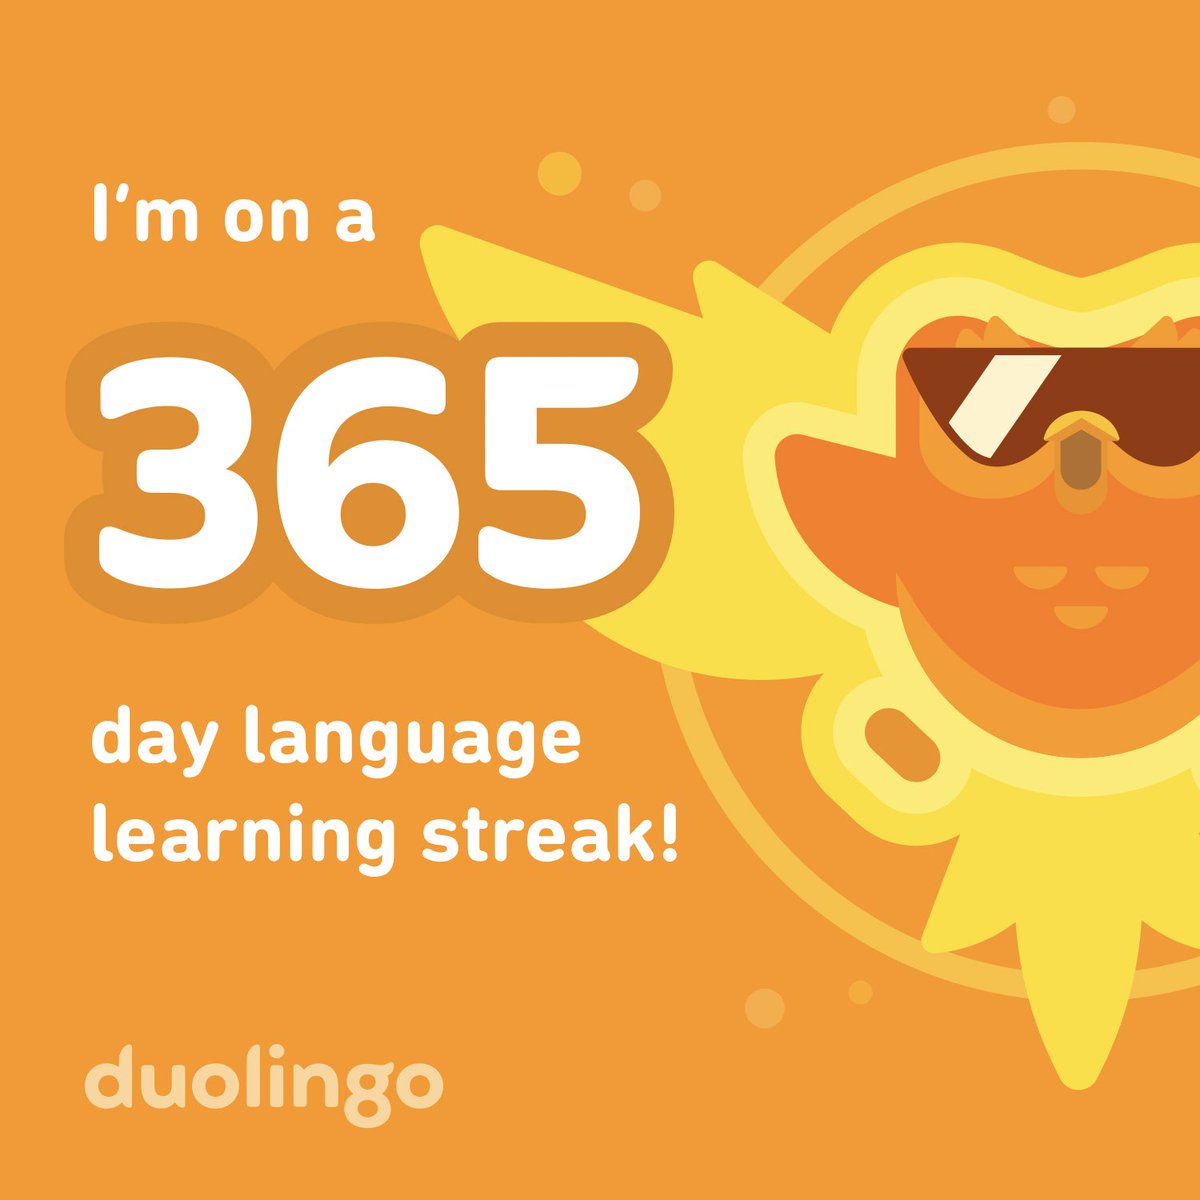 Just reached a year of duolingo learning spanish, holy shit🫣 #Duolingo #duolingo365